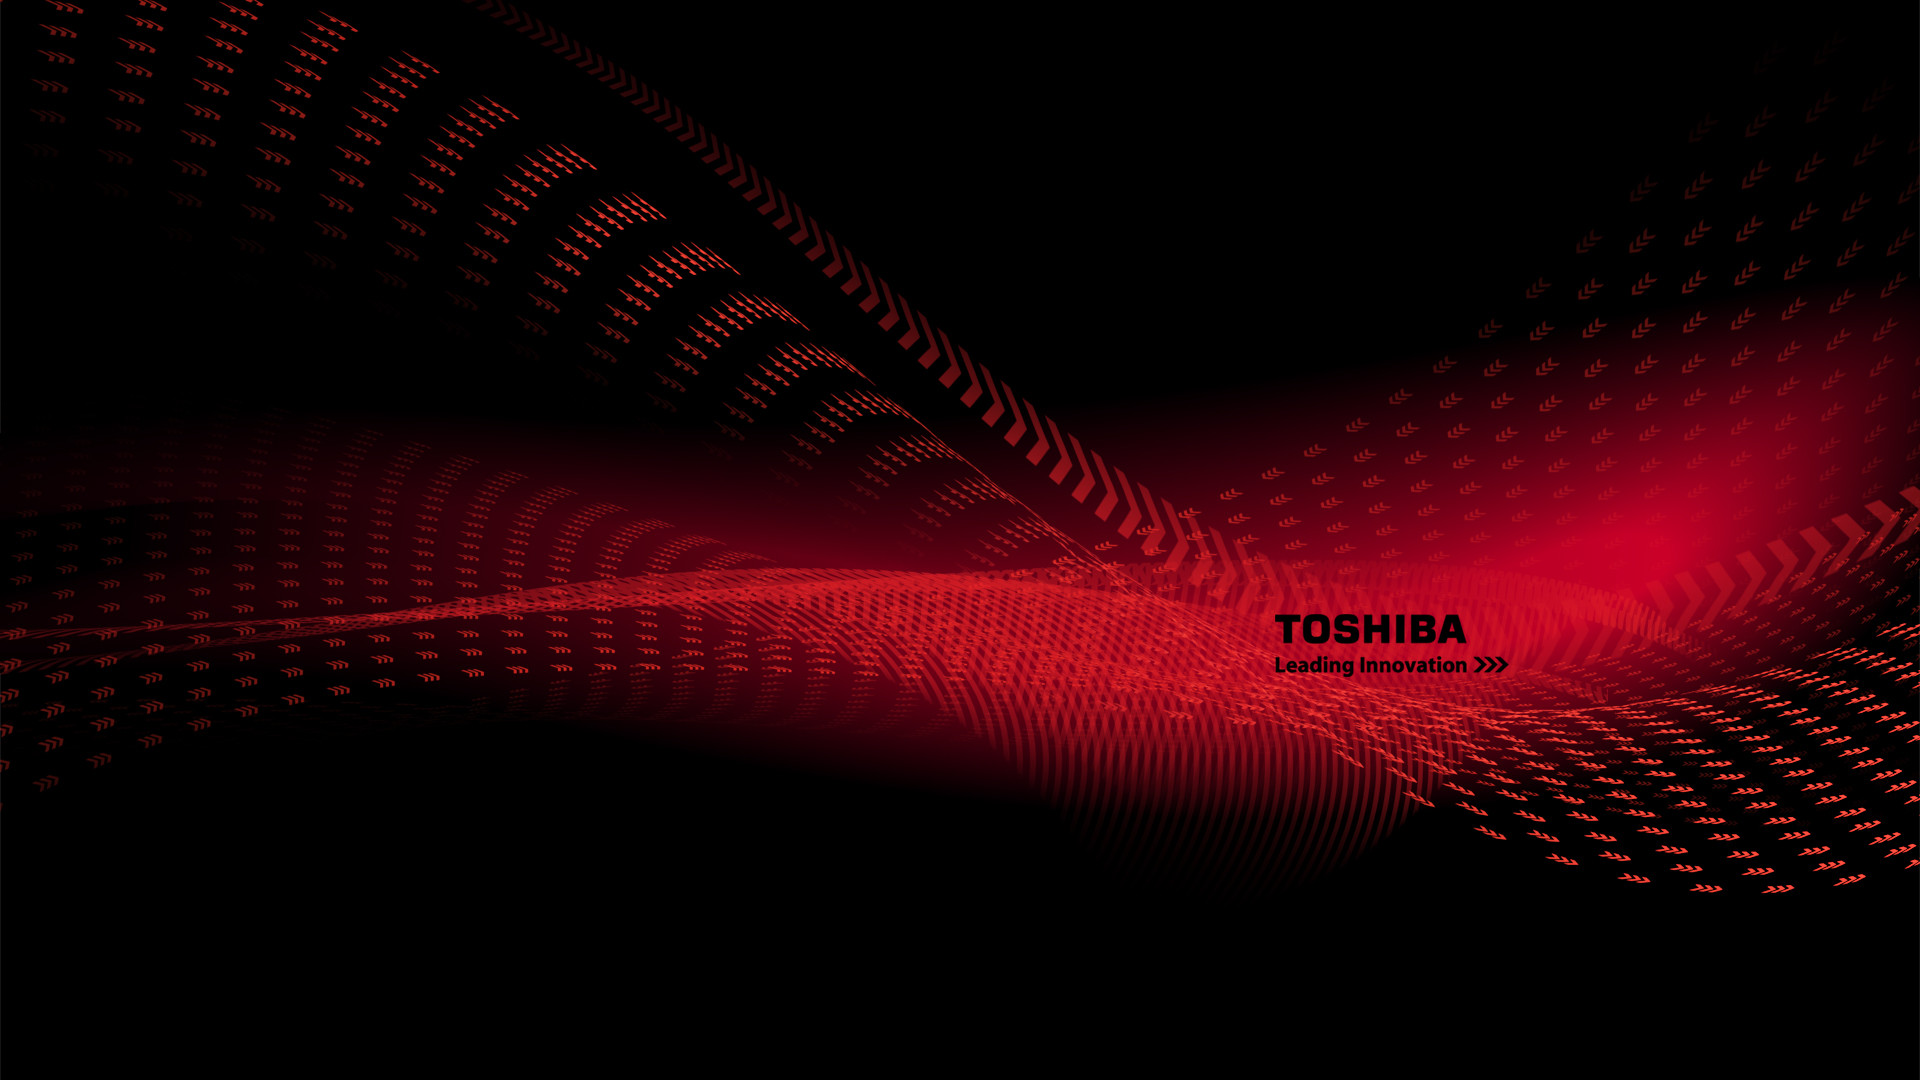 1920x1080 Toshiba Wallpapers, Images of Toshiba | 